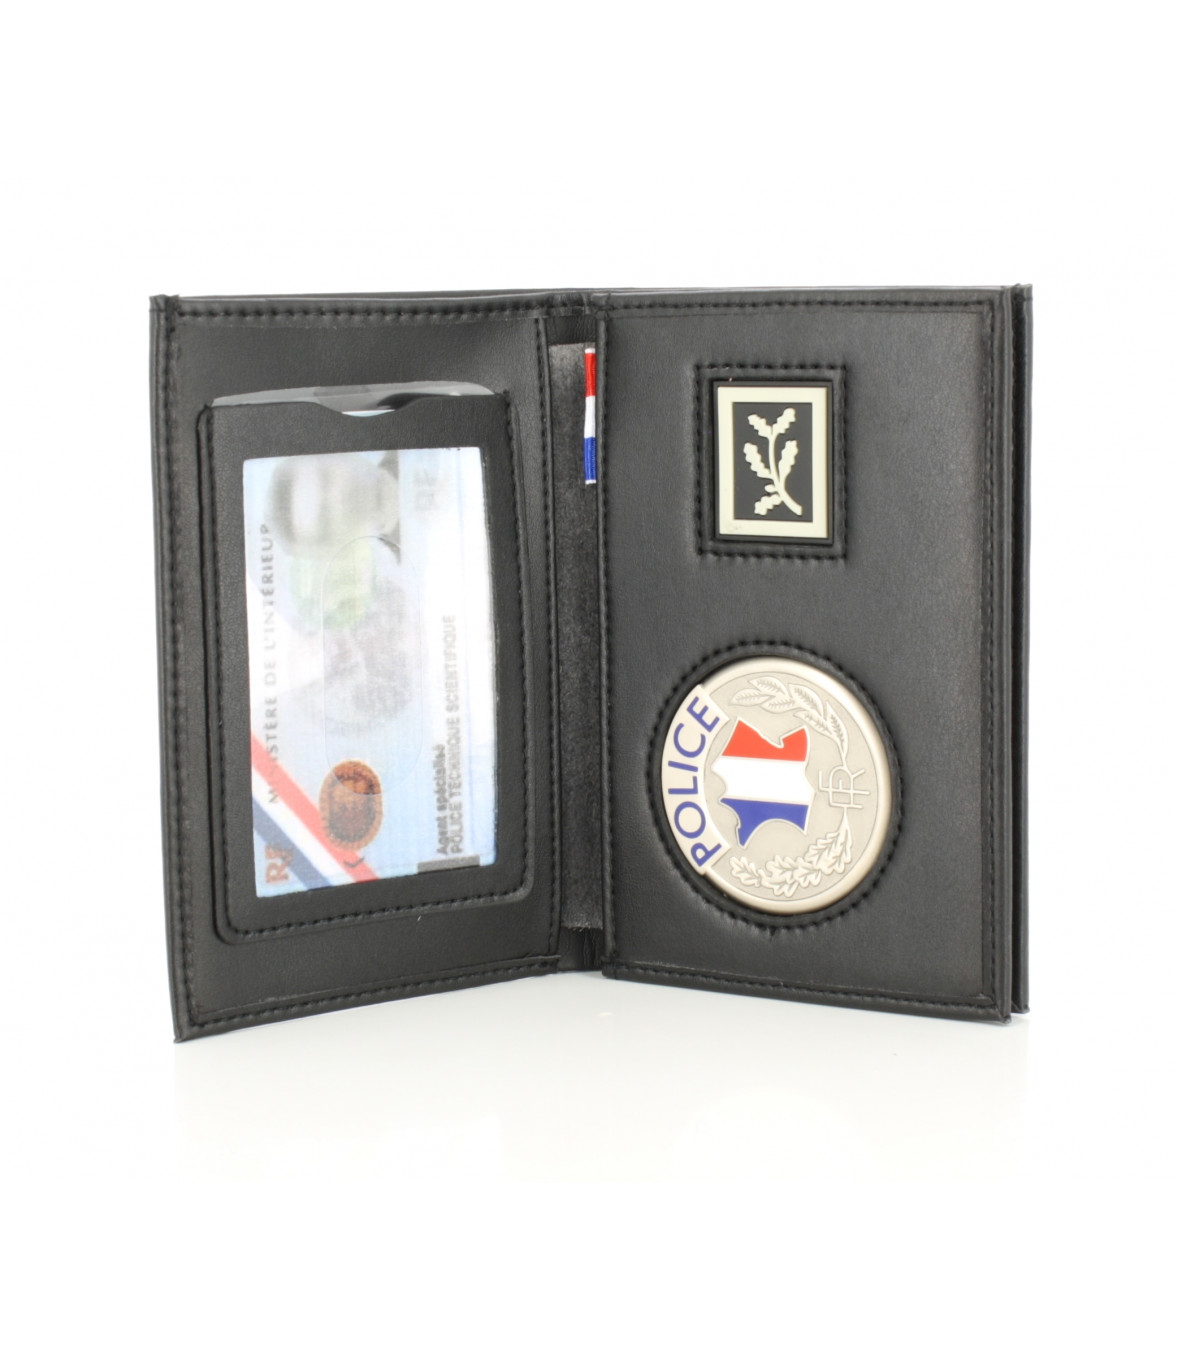 Porte-carte 3 volets avec médaille Police - FIT - Cdiscount